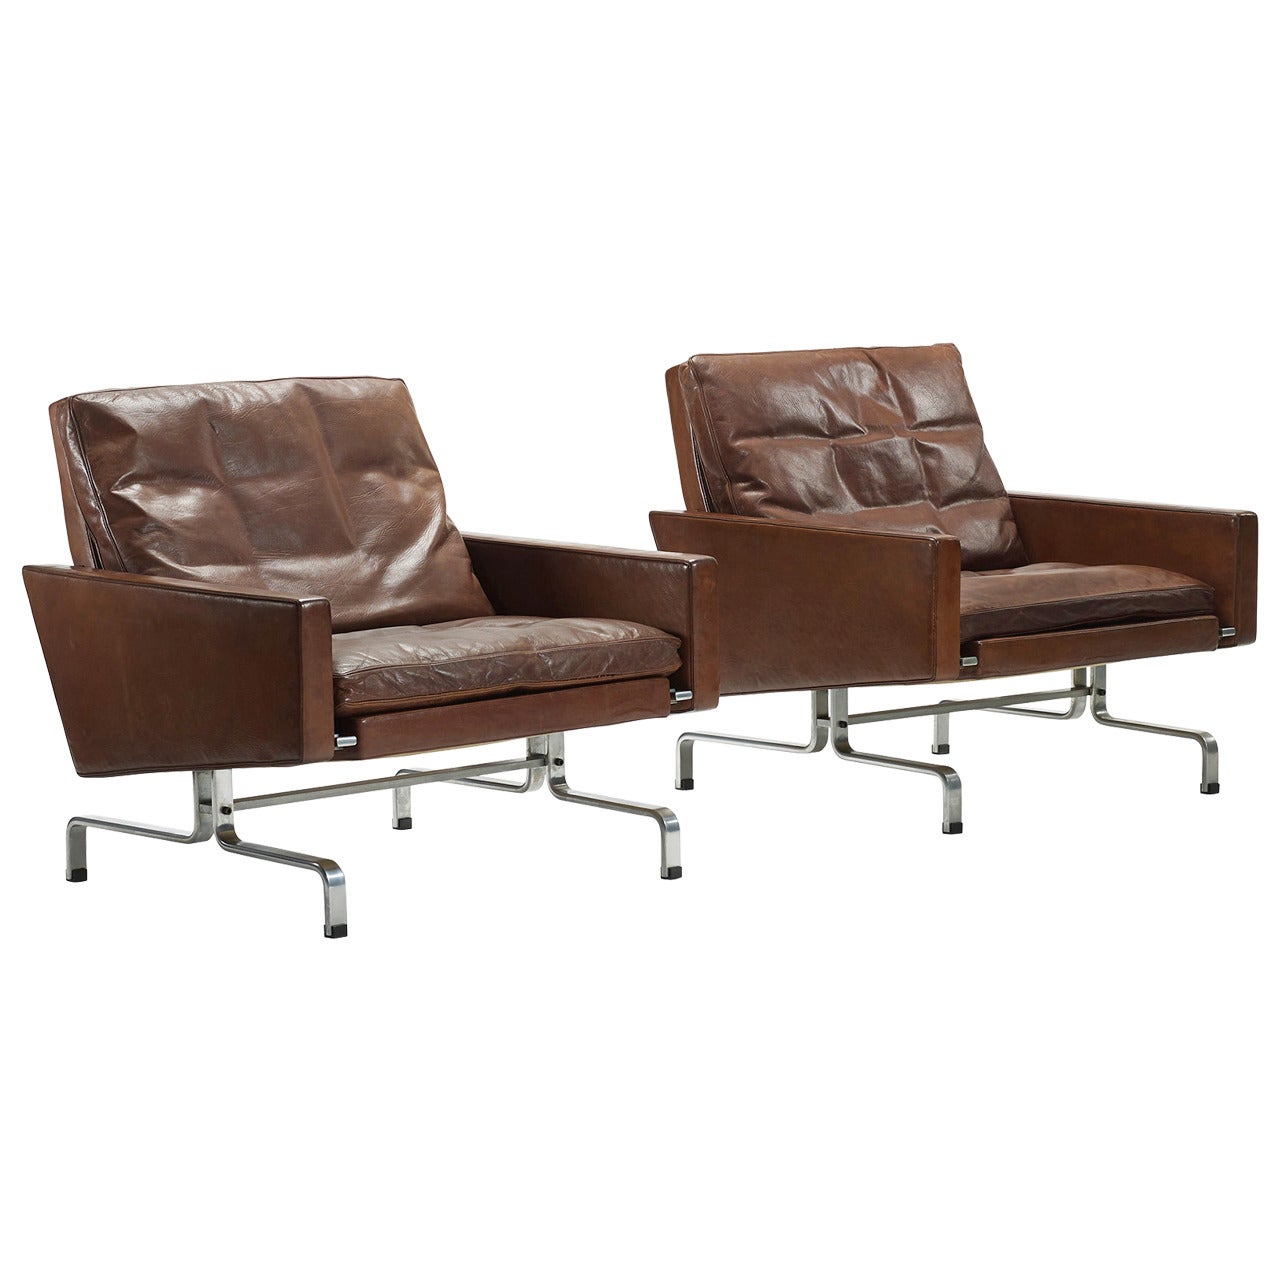 PK-31 Lounge Chairs, Pair by Poul Kjaerholm for E. Kold Christensen